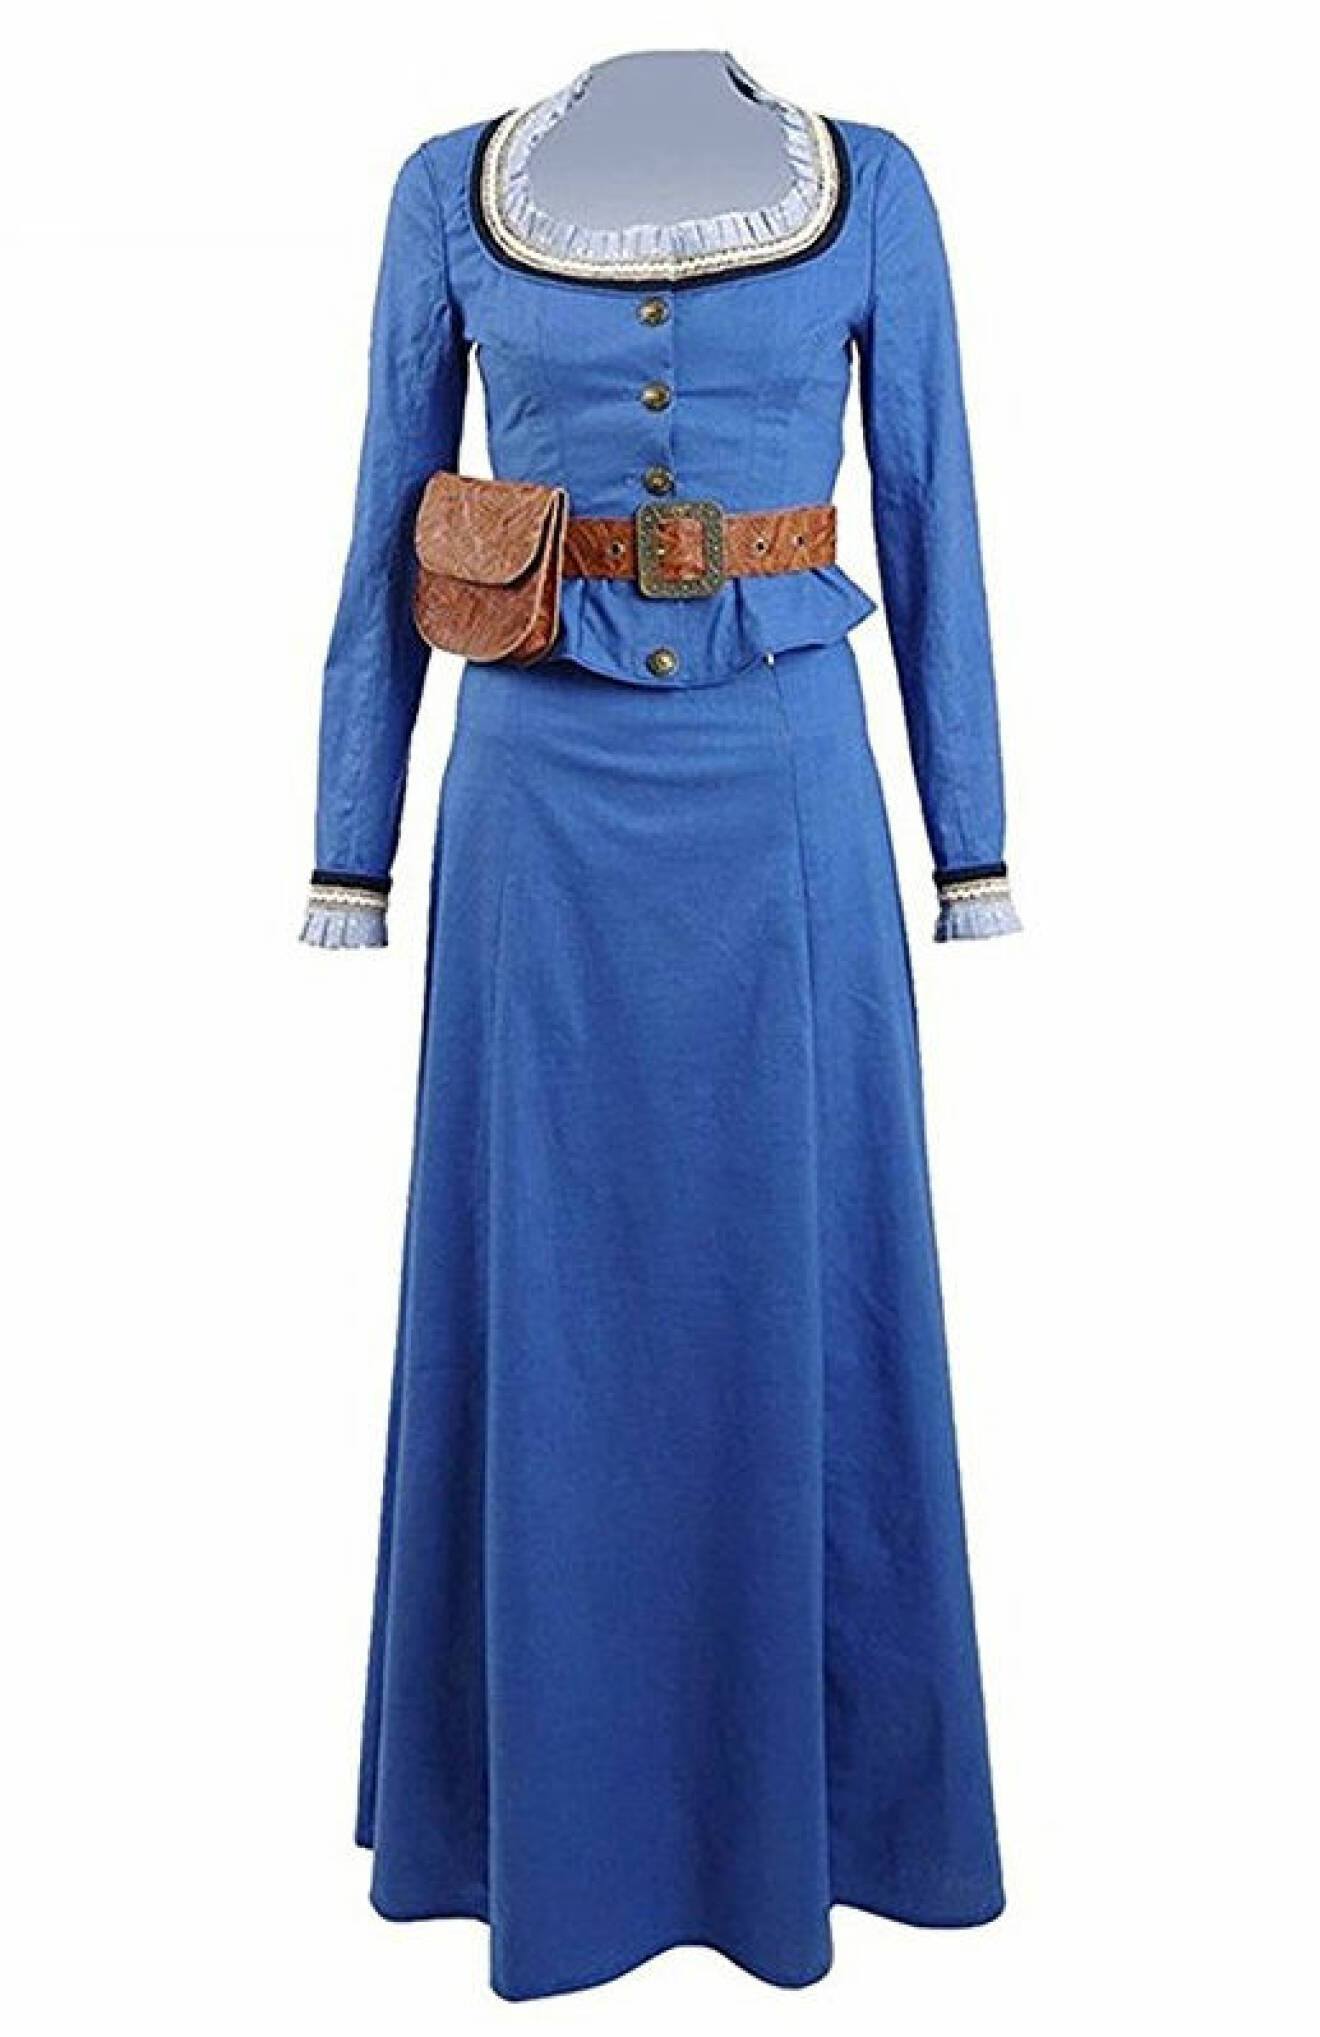 Dolores klänning från HBO:s Westoworld.